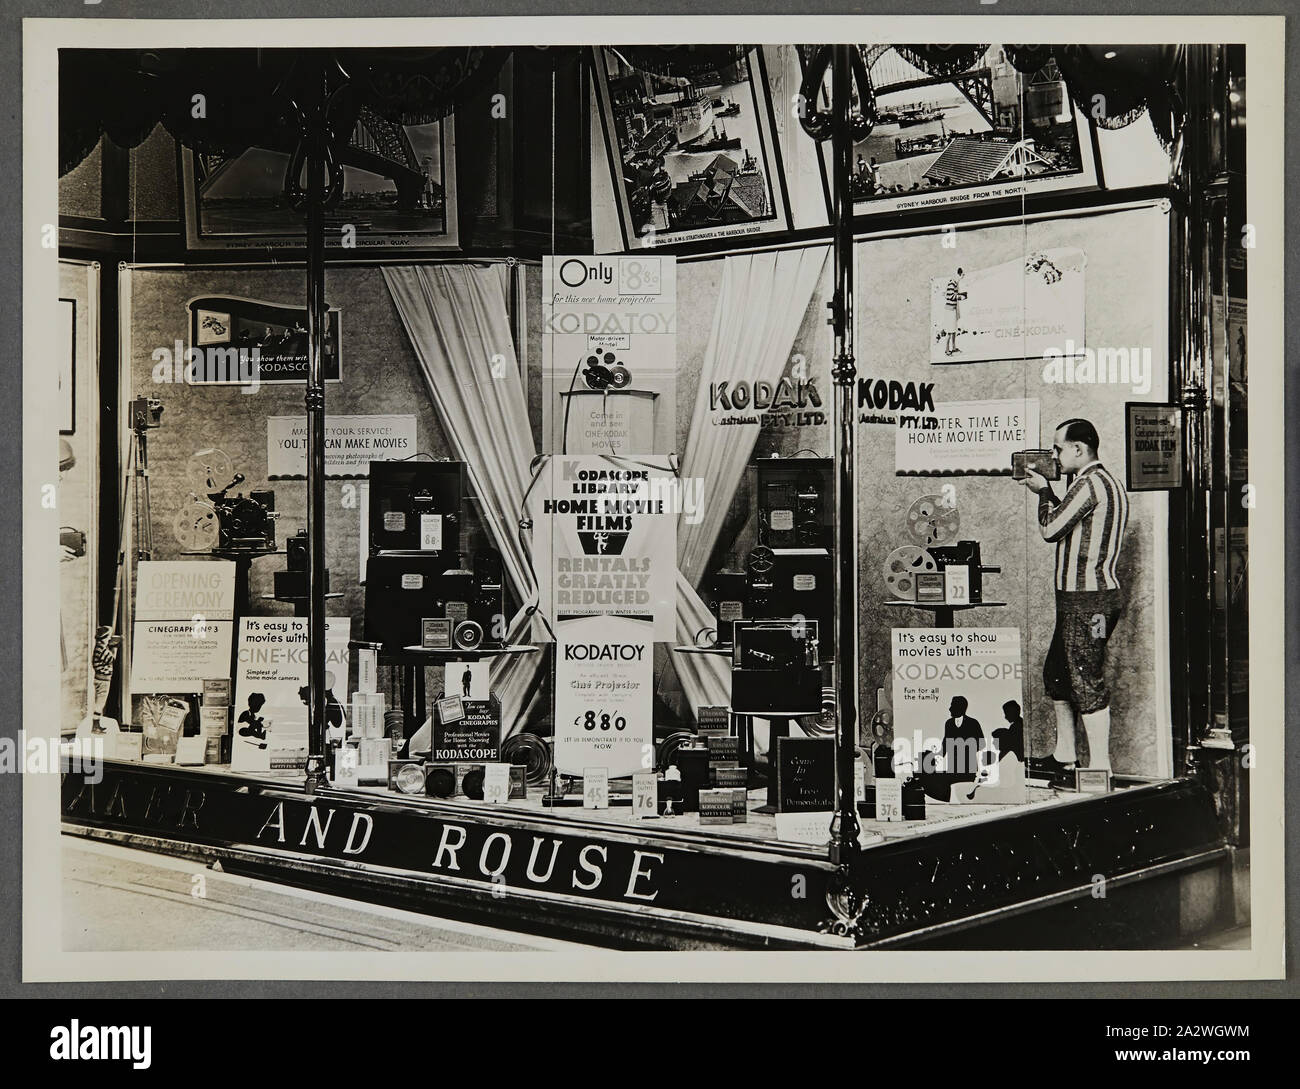 Photographie - Kodak, des passants, l'affichage 'Kodascope Accueil Films Film', vers 1934-1936, des passants afficher 'Kodascope Accueil Films film montrant des caméras, des photographies, des accessoires et de l'équipement photographique. L'une des cinquante-six photographies dans un album illustrant Australasia Pty Ltd Kodak shop/fenêtre affiche depuis le milieu des années 1930. En général Windows produits en vedette promotions pour film ou des appareils photo, ainsi que des expositions de photos pour attirer les foules au magasin. Expositions Banque D'Images